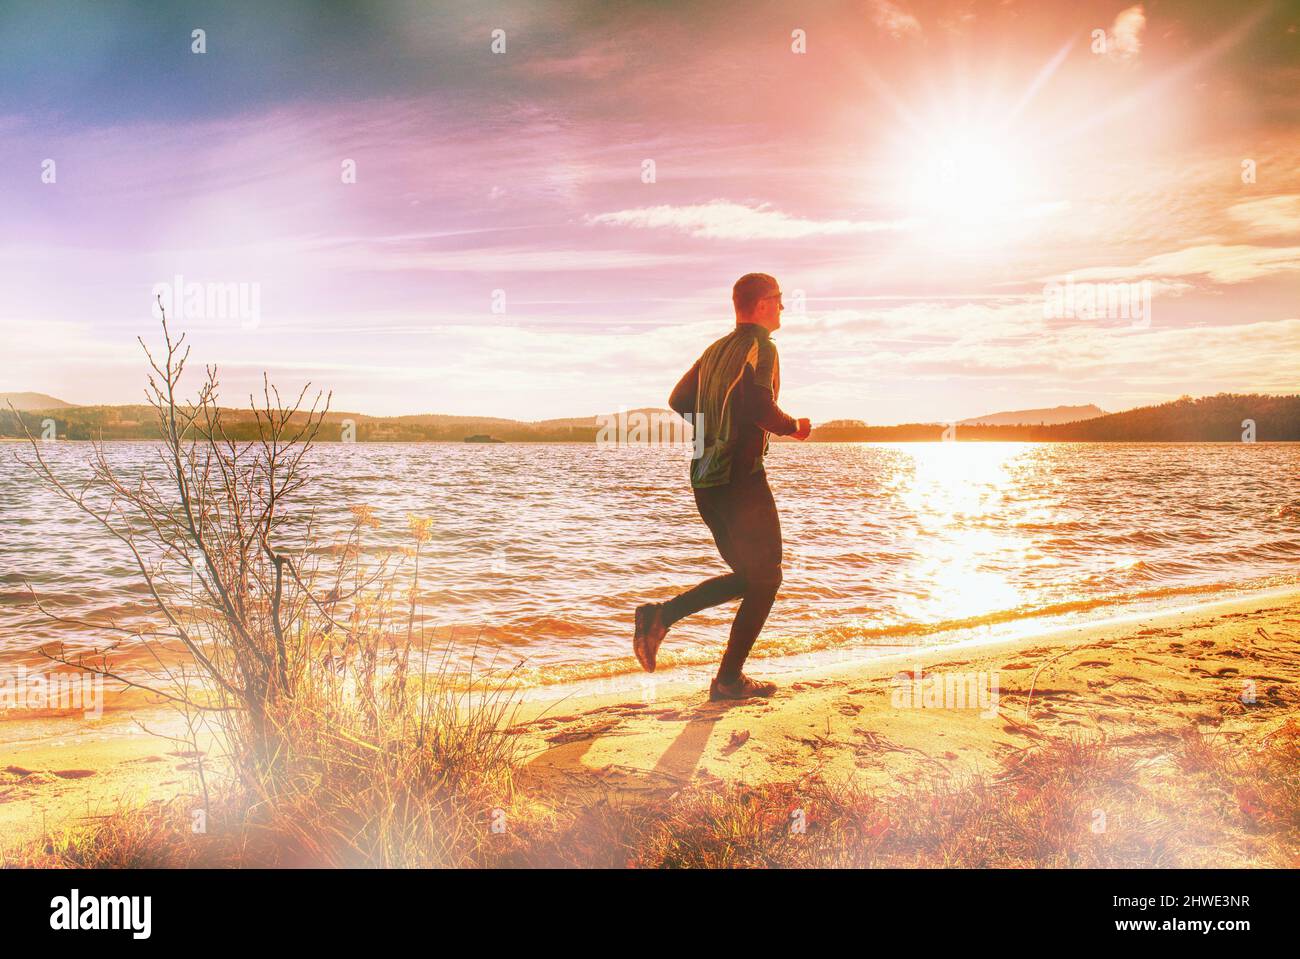 Hombre alto que huida solo del lago. El hombre corre en la playa. Iluminación abstracta, llamaradas coloridas. Foto de stock